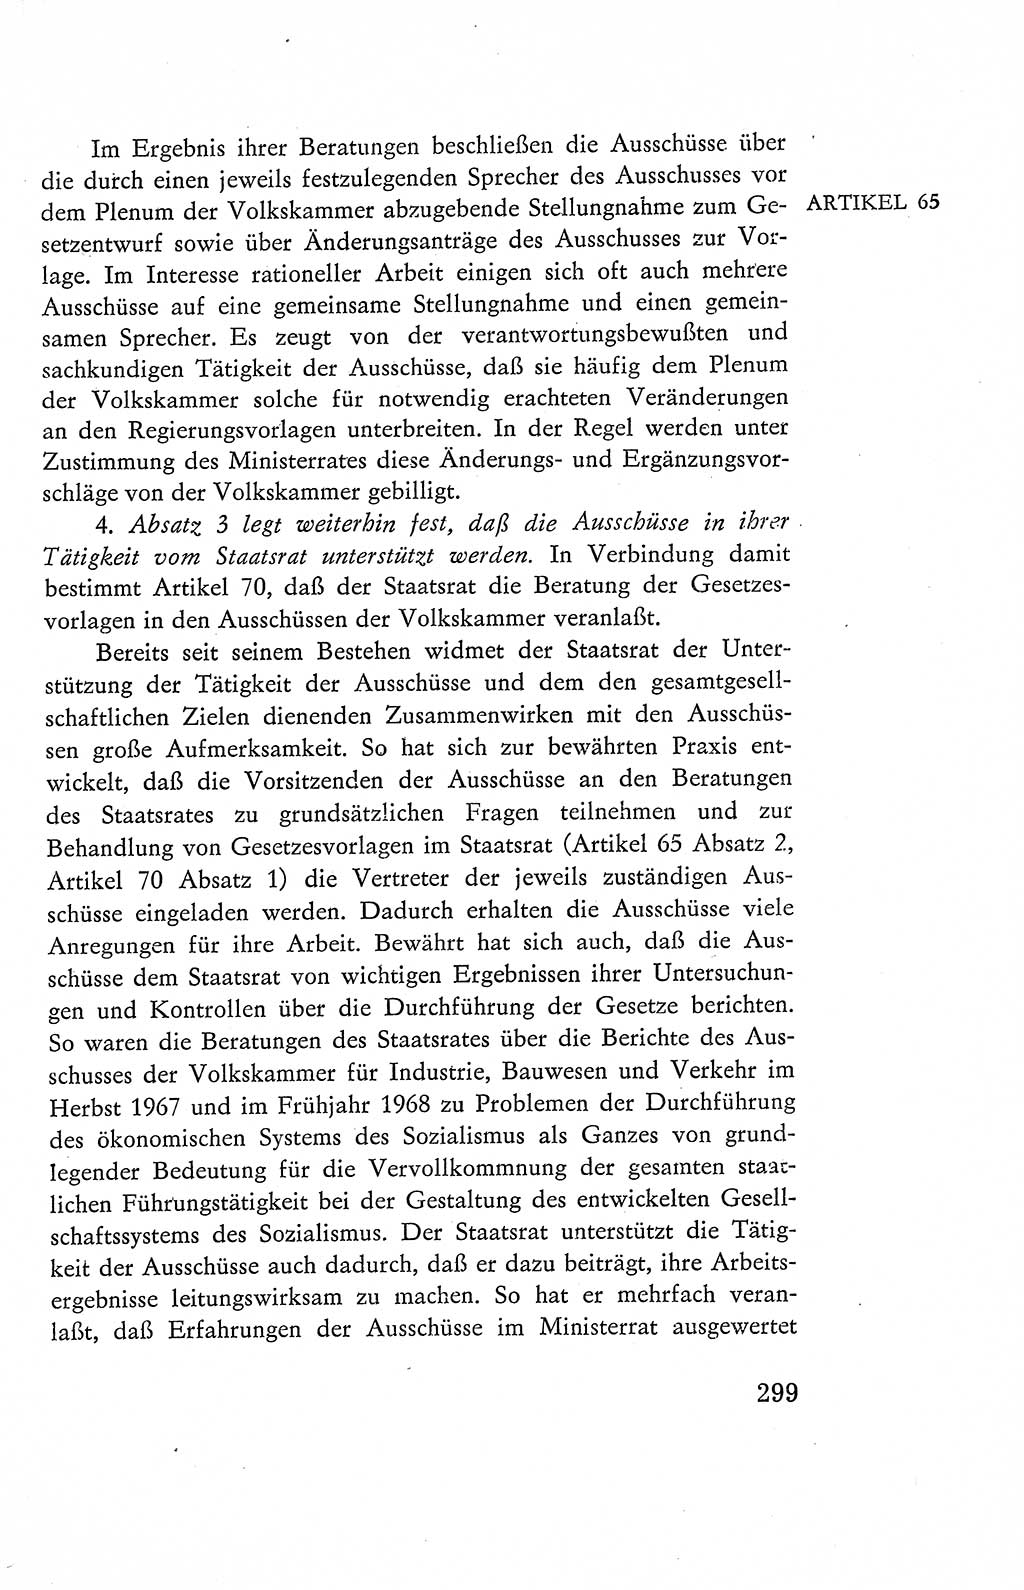 Verfassung der Deutschen Demokratischen Republik (DDR), Dokumente, Kommentar 1969, Band 2, Seite 299 (Verf. DDR Dok. Komm. 1969, Bd. 2, S. 299)